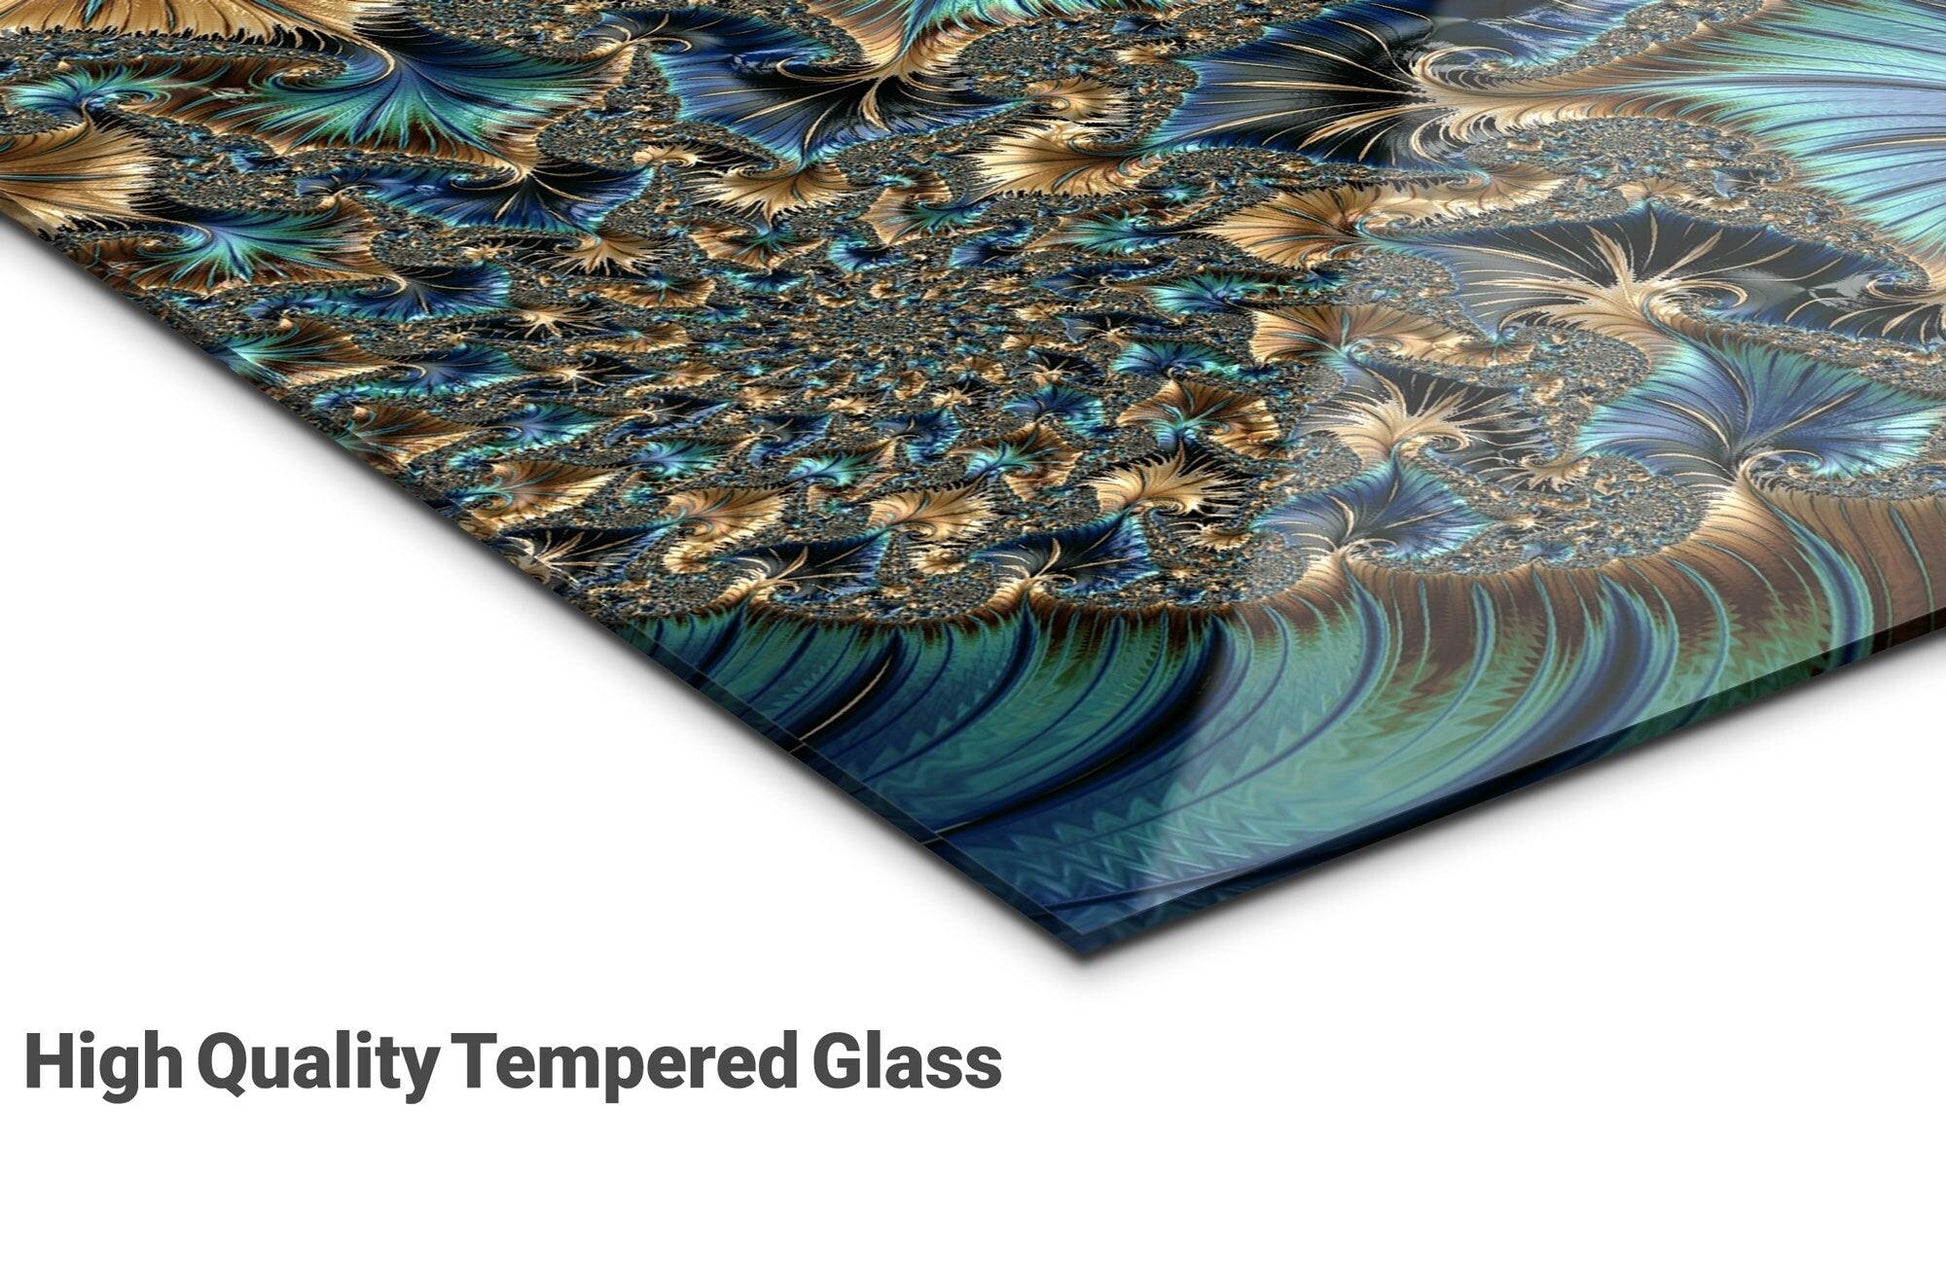 Tempered Glass Wall Art |Glass Printing, glass printing wall art, Interior Design Ideas, glass wall art, Office Wall Decor, Modern Glass Art